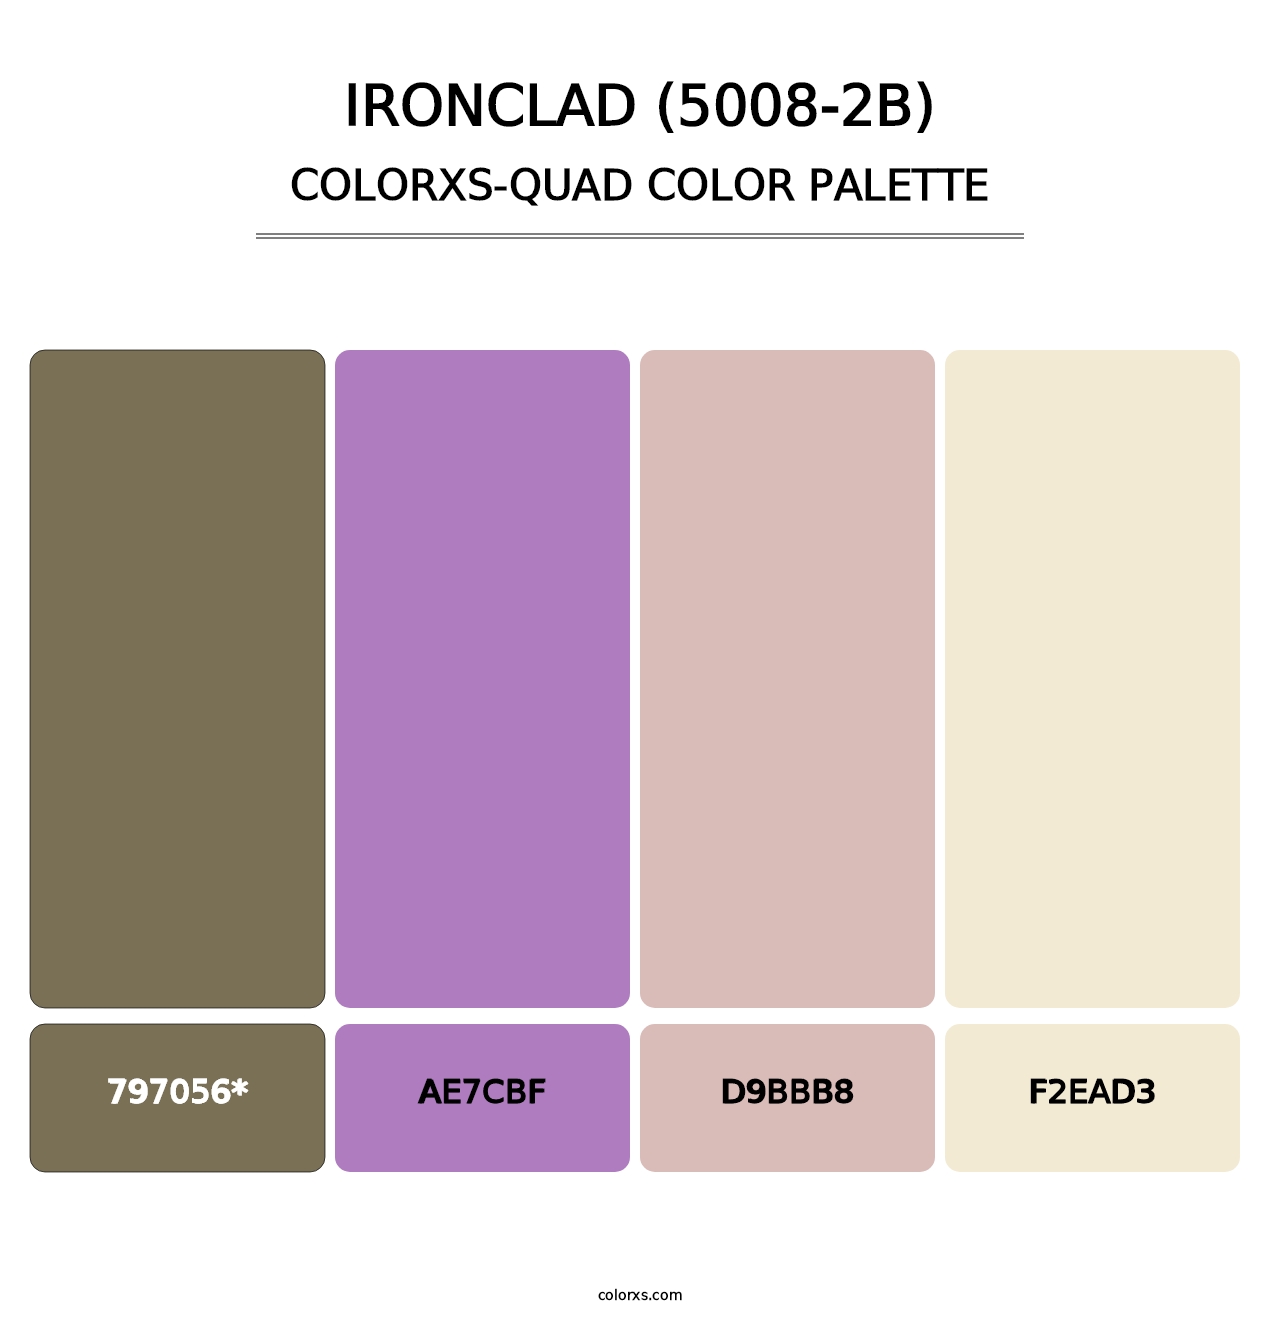 Ironclad (5008-2B) - Colorxs Quad Palette